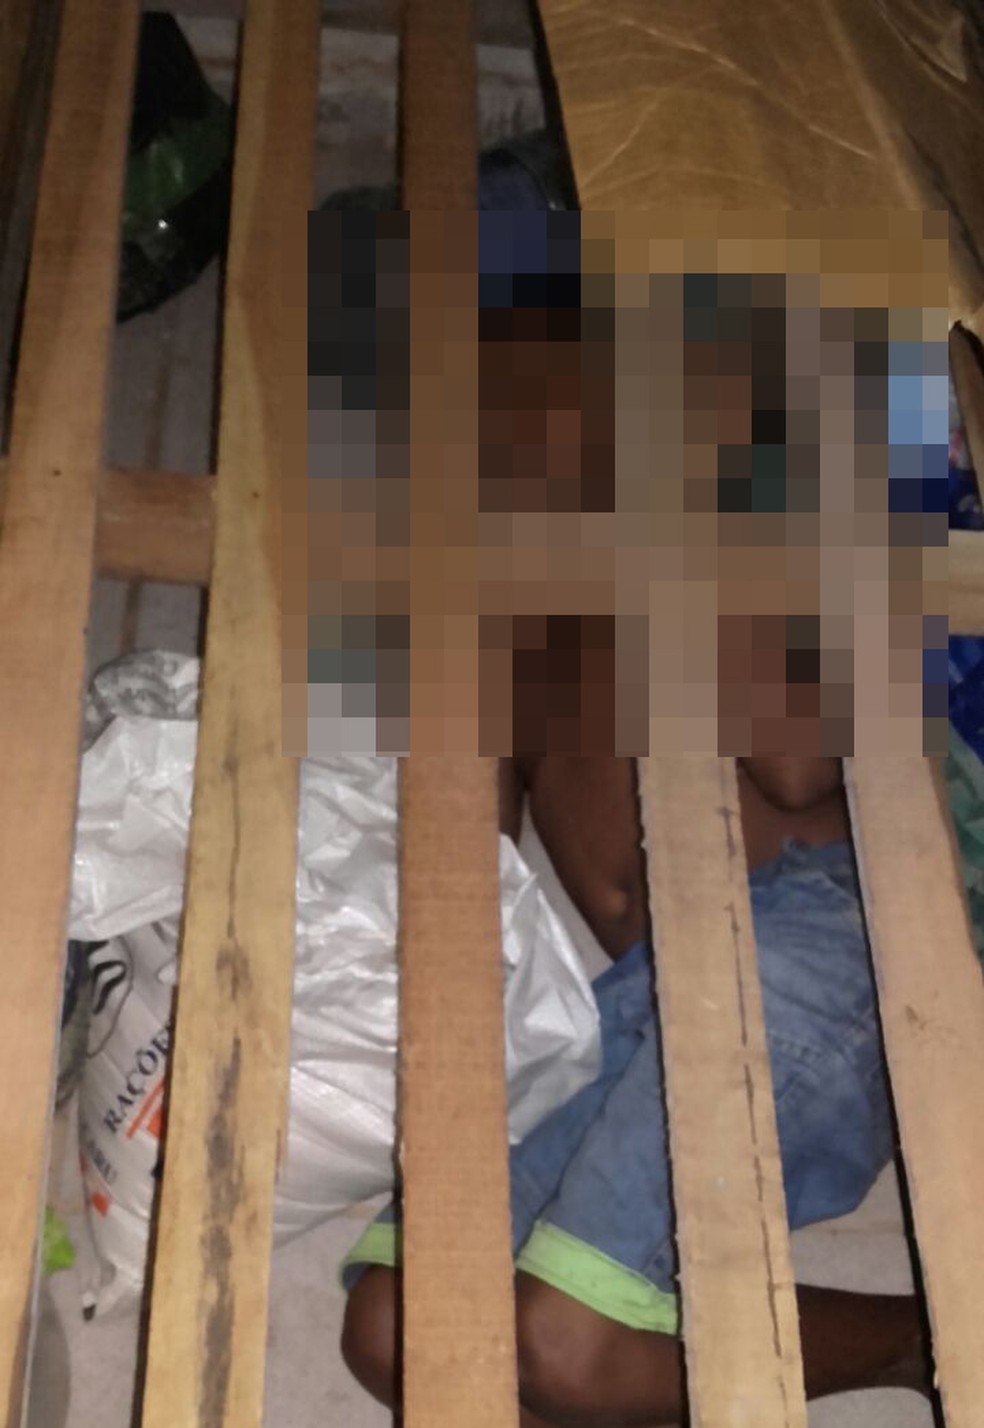 Menino de 11 anos foi encontrado debaixo da cama de um detento (Foto: Divulgação / Sinpoljuspi)